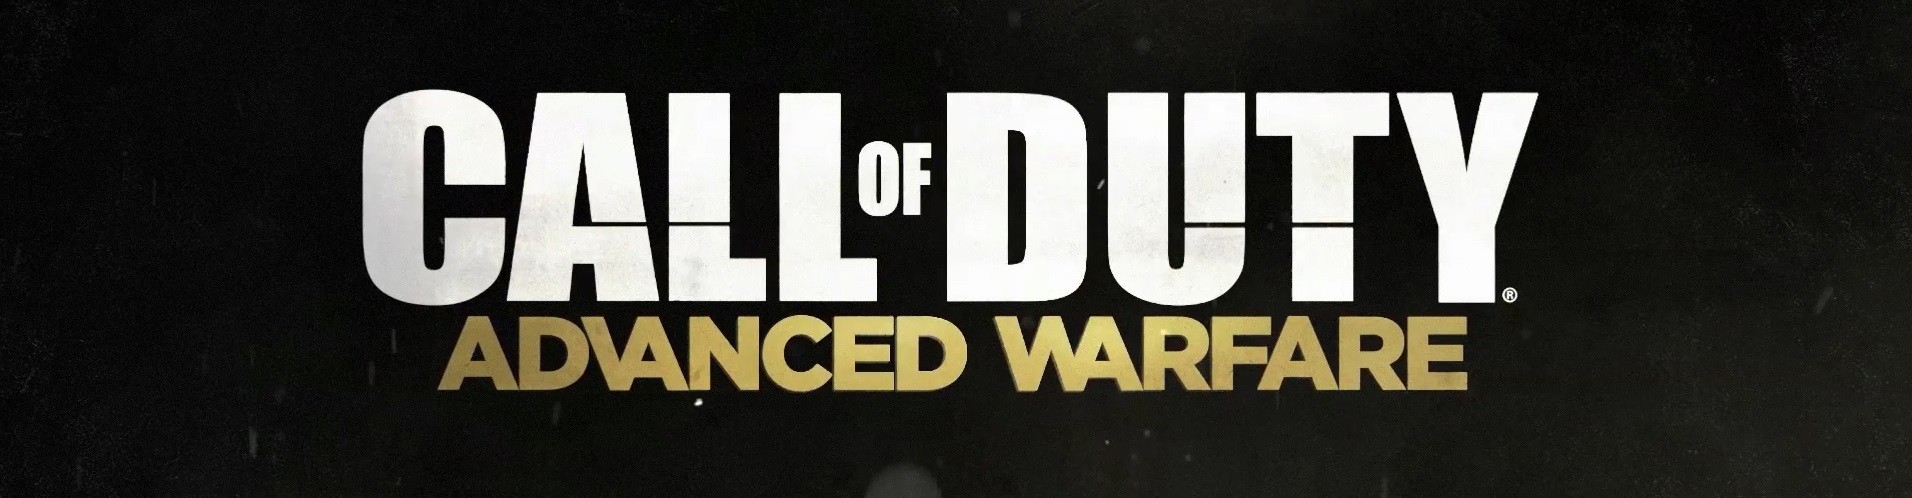 콜 오브 듀티: 어드밴스드 워페어 (Call of Duty: Advanced Warfare) OST - Draconian Dream